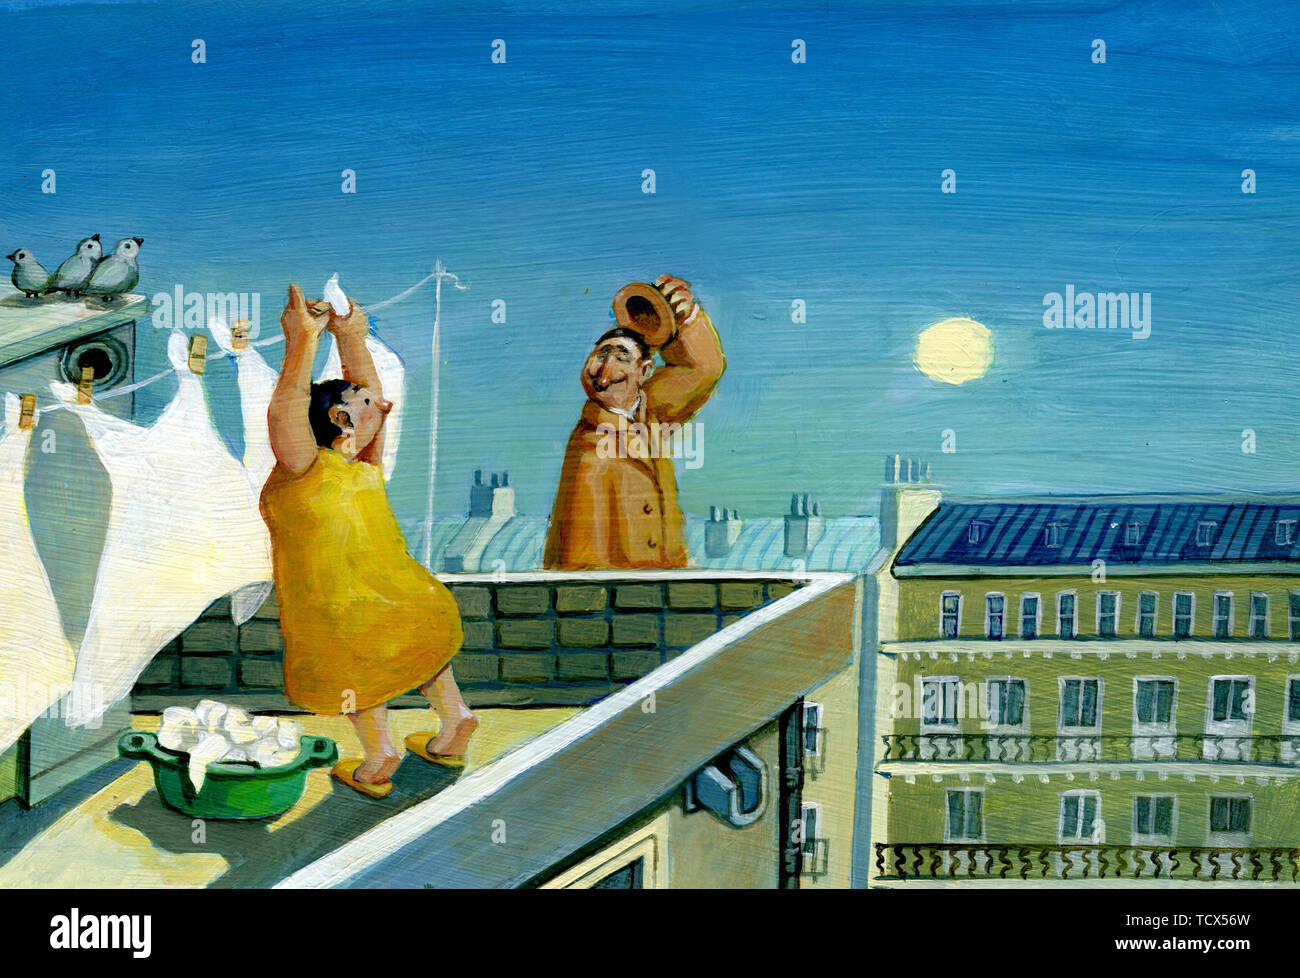 Femme à l'aube de blanchisserie est suspendu sur le toit d'une chambre haute voit un homme marchant dans l'air et en agitant son chapeau Banque D'Images